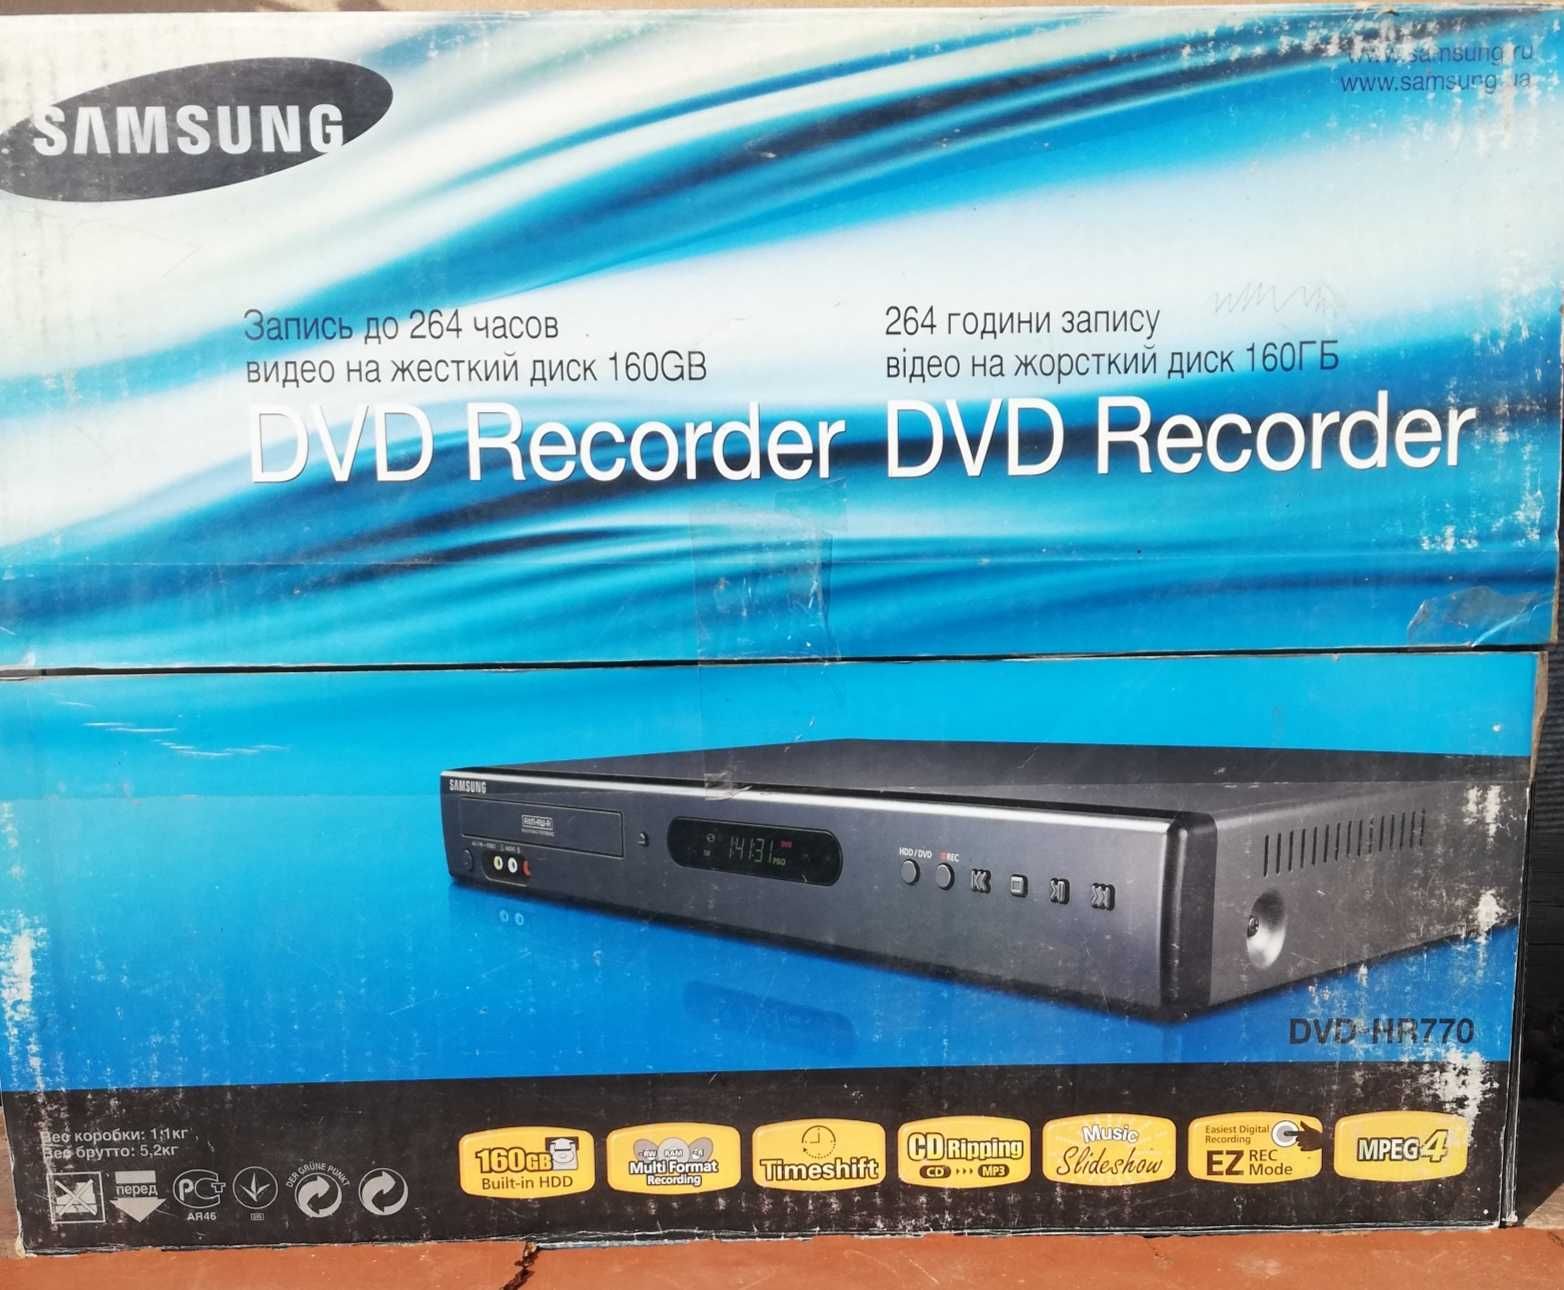 Видео-DVD Recorder Samsung с встроиным жестким диском 160ГБ .